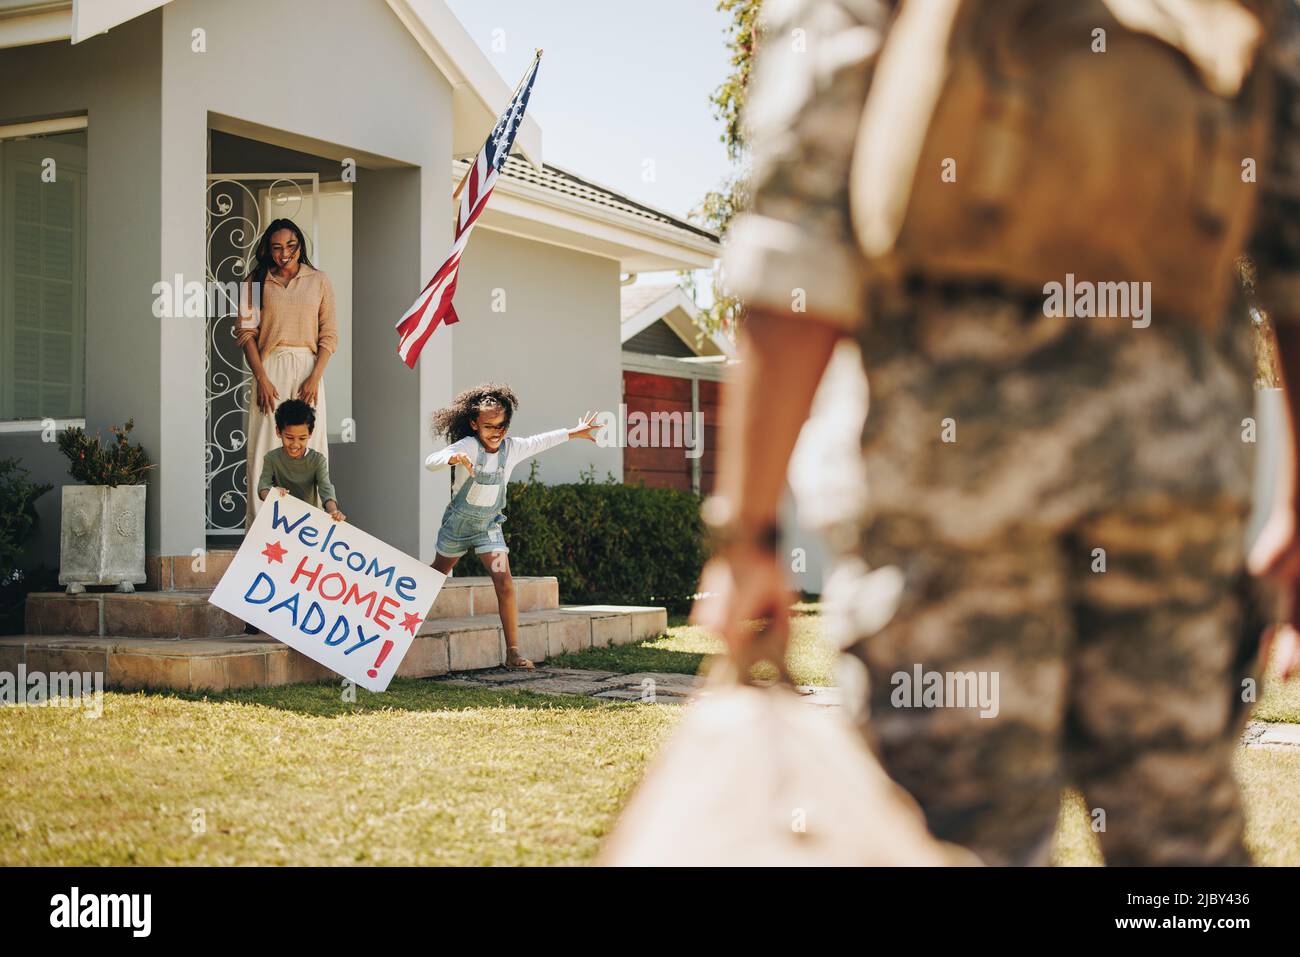 Aufgeregt junge Kinder laufen, um ihren Vater nach seiner Rückkehr aus der Armee willkommen zu heißen. Nach dem Dienst vereint sich der amerikanische Soldat wieder mit seiner Frau und seinen Kindern Stockfoto